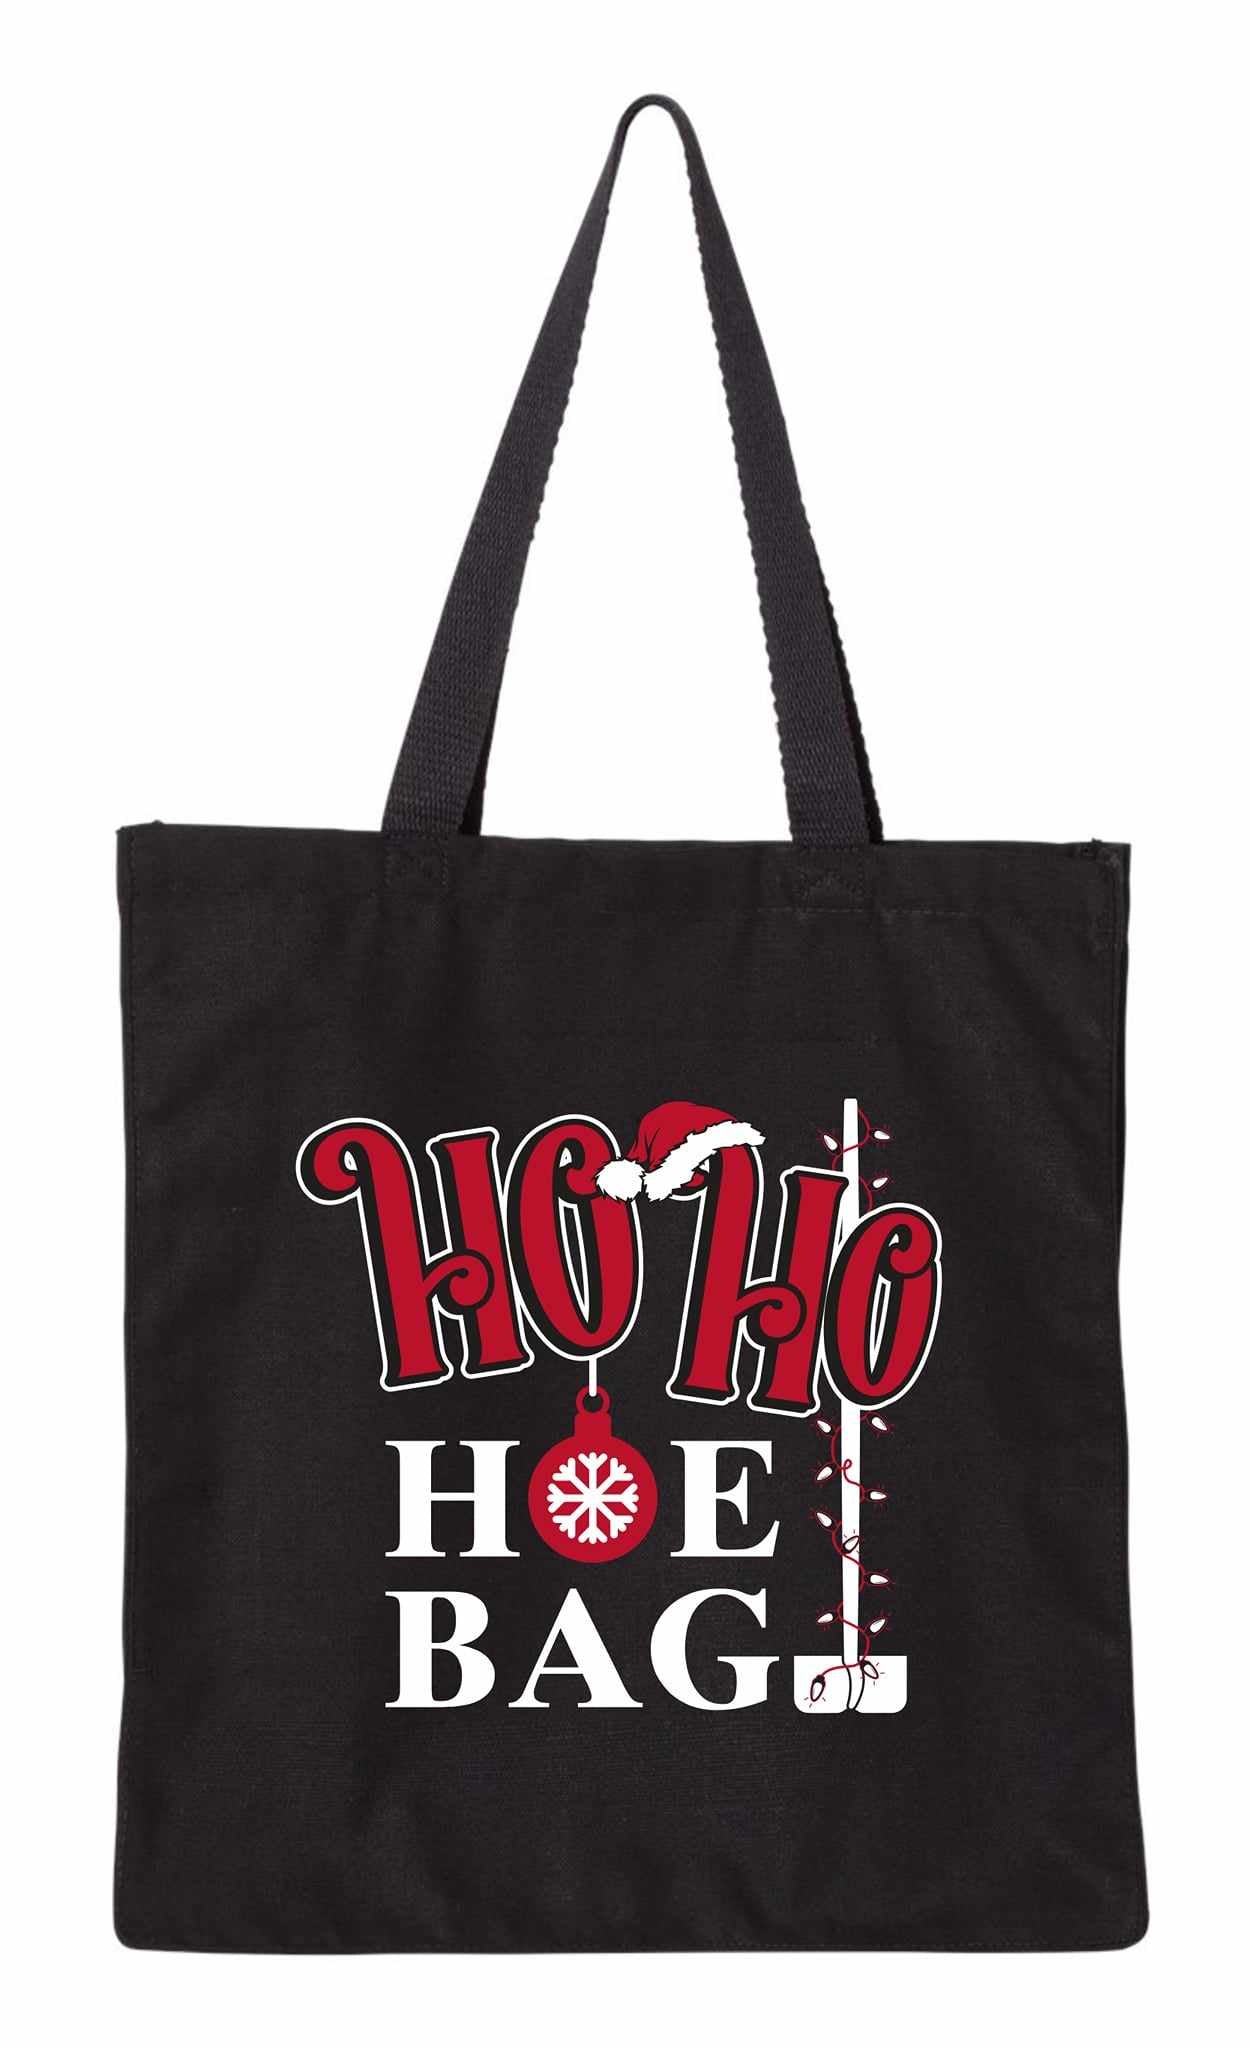 Holiday Ho Ho Hoe Bag